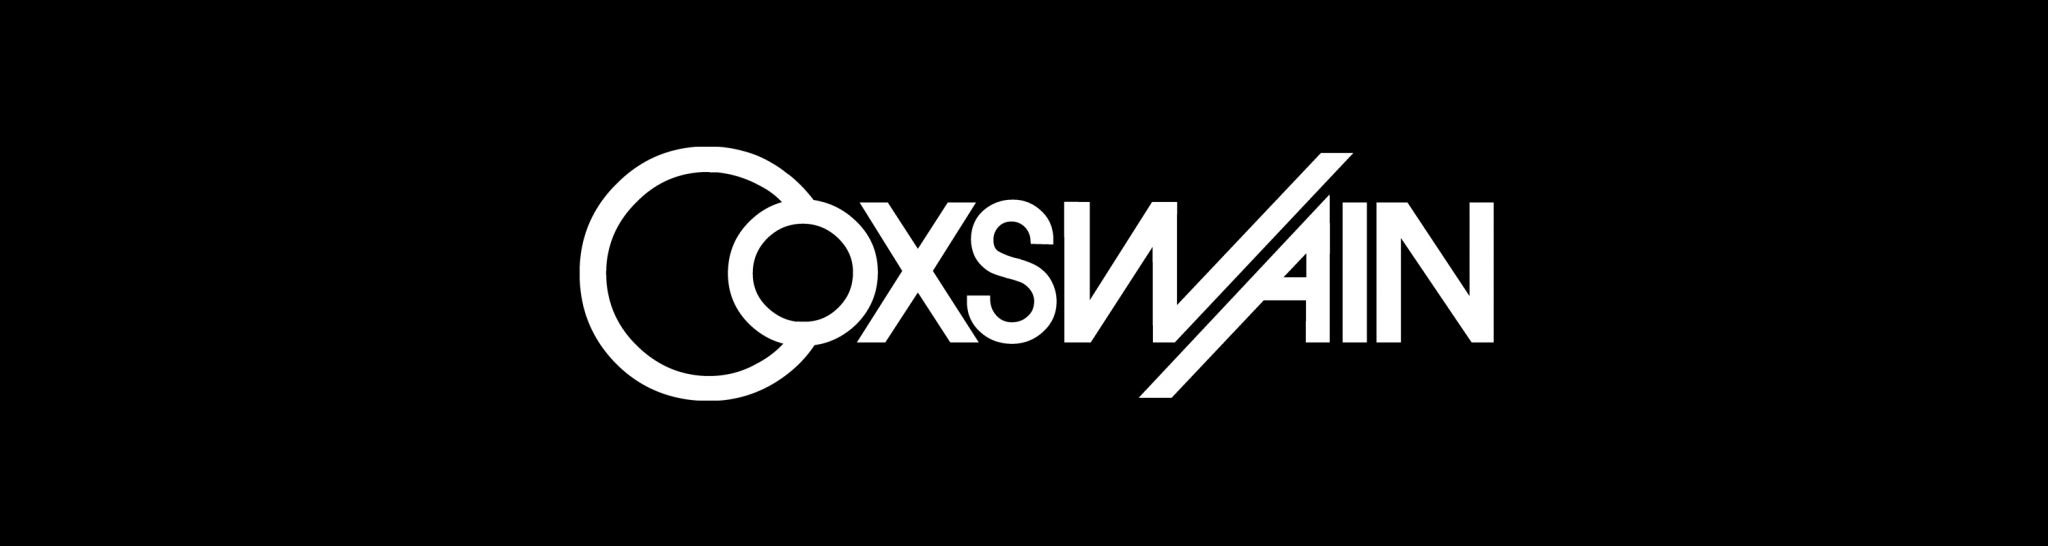 DJ Coxswain